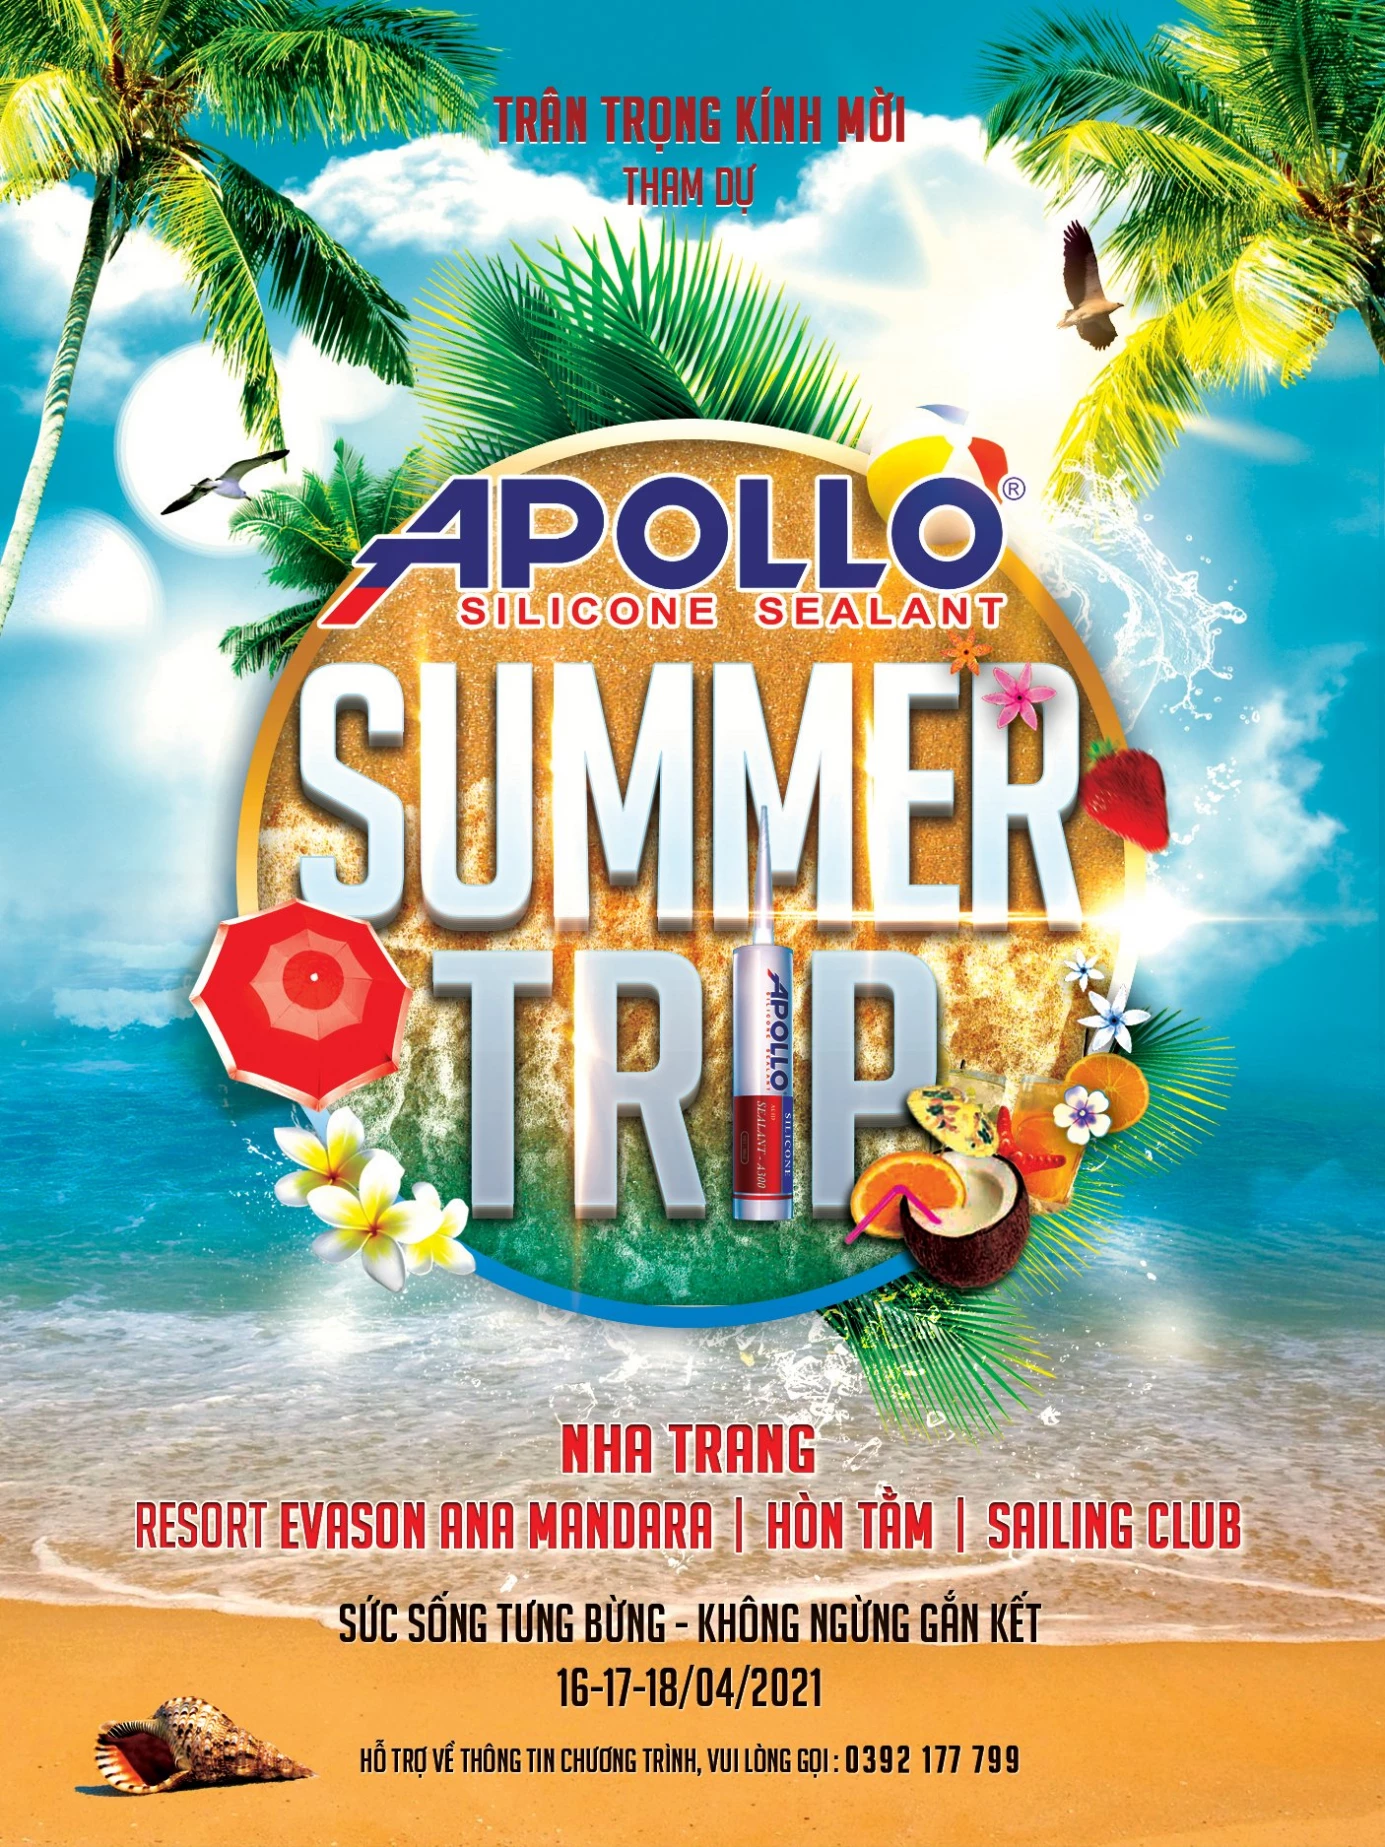 Apollo Summer trip 2021 - Sức sống tưng bừng - Không ngừng gắn kết